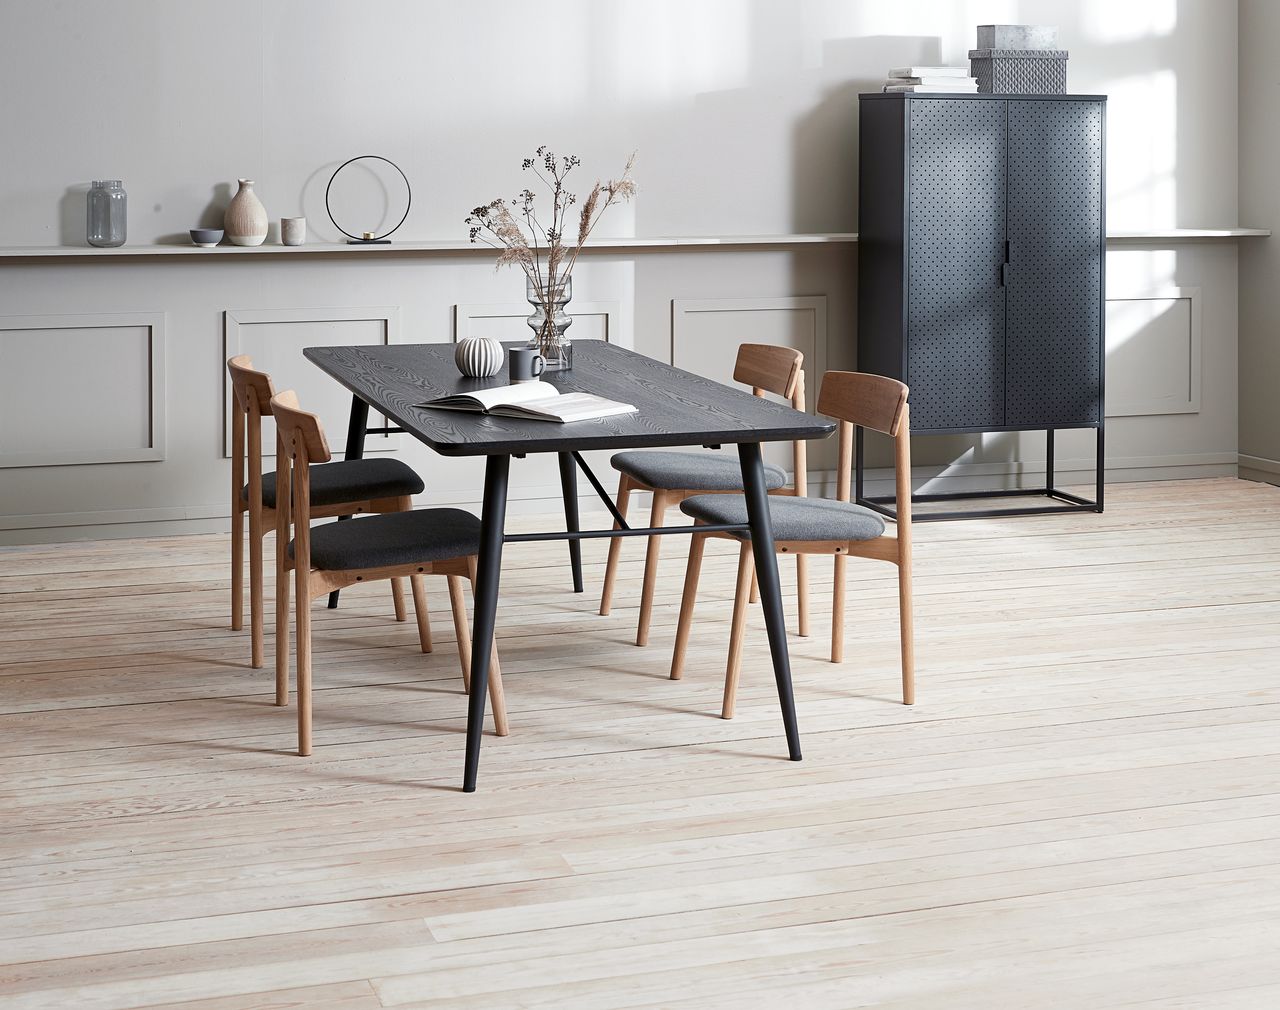 Phòng bếp phong cách Scandinavian Design có sự kết hợp màu sắc tương phản tạo điểm nhấn độc đáo